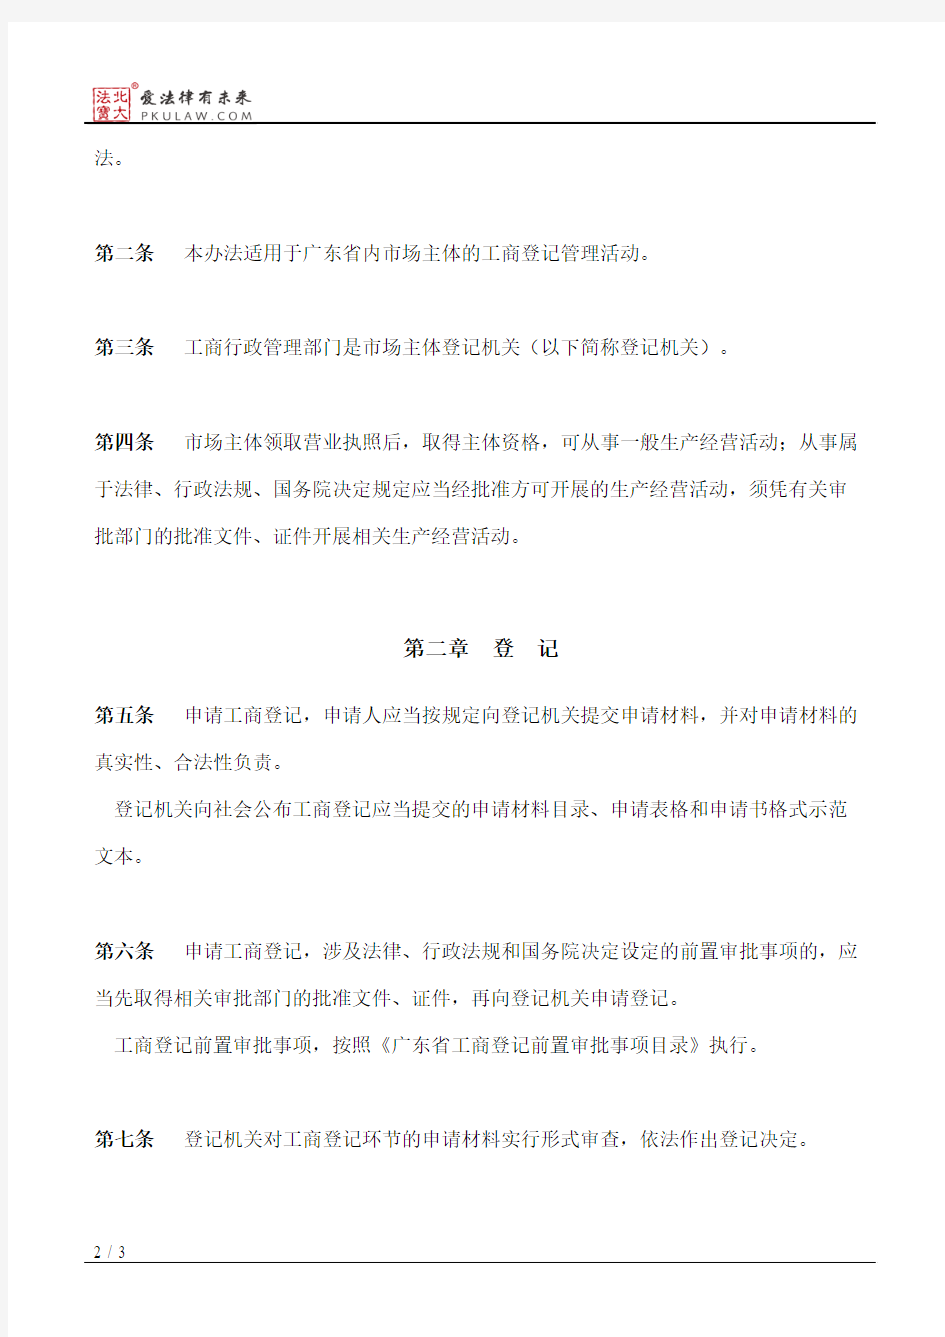 广东省工商行政管理局关于工商登记制度改革的实施办法(暂行)